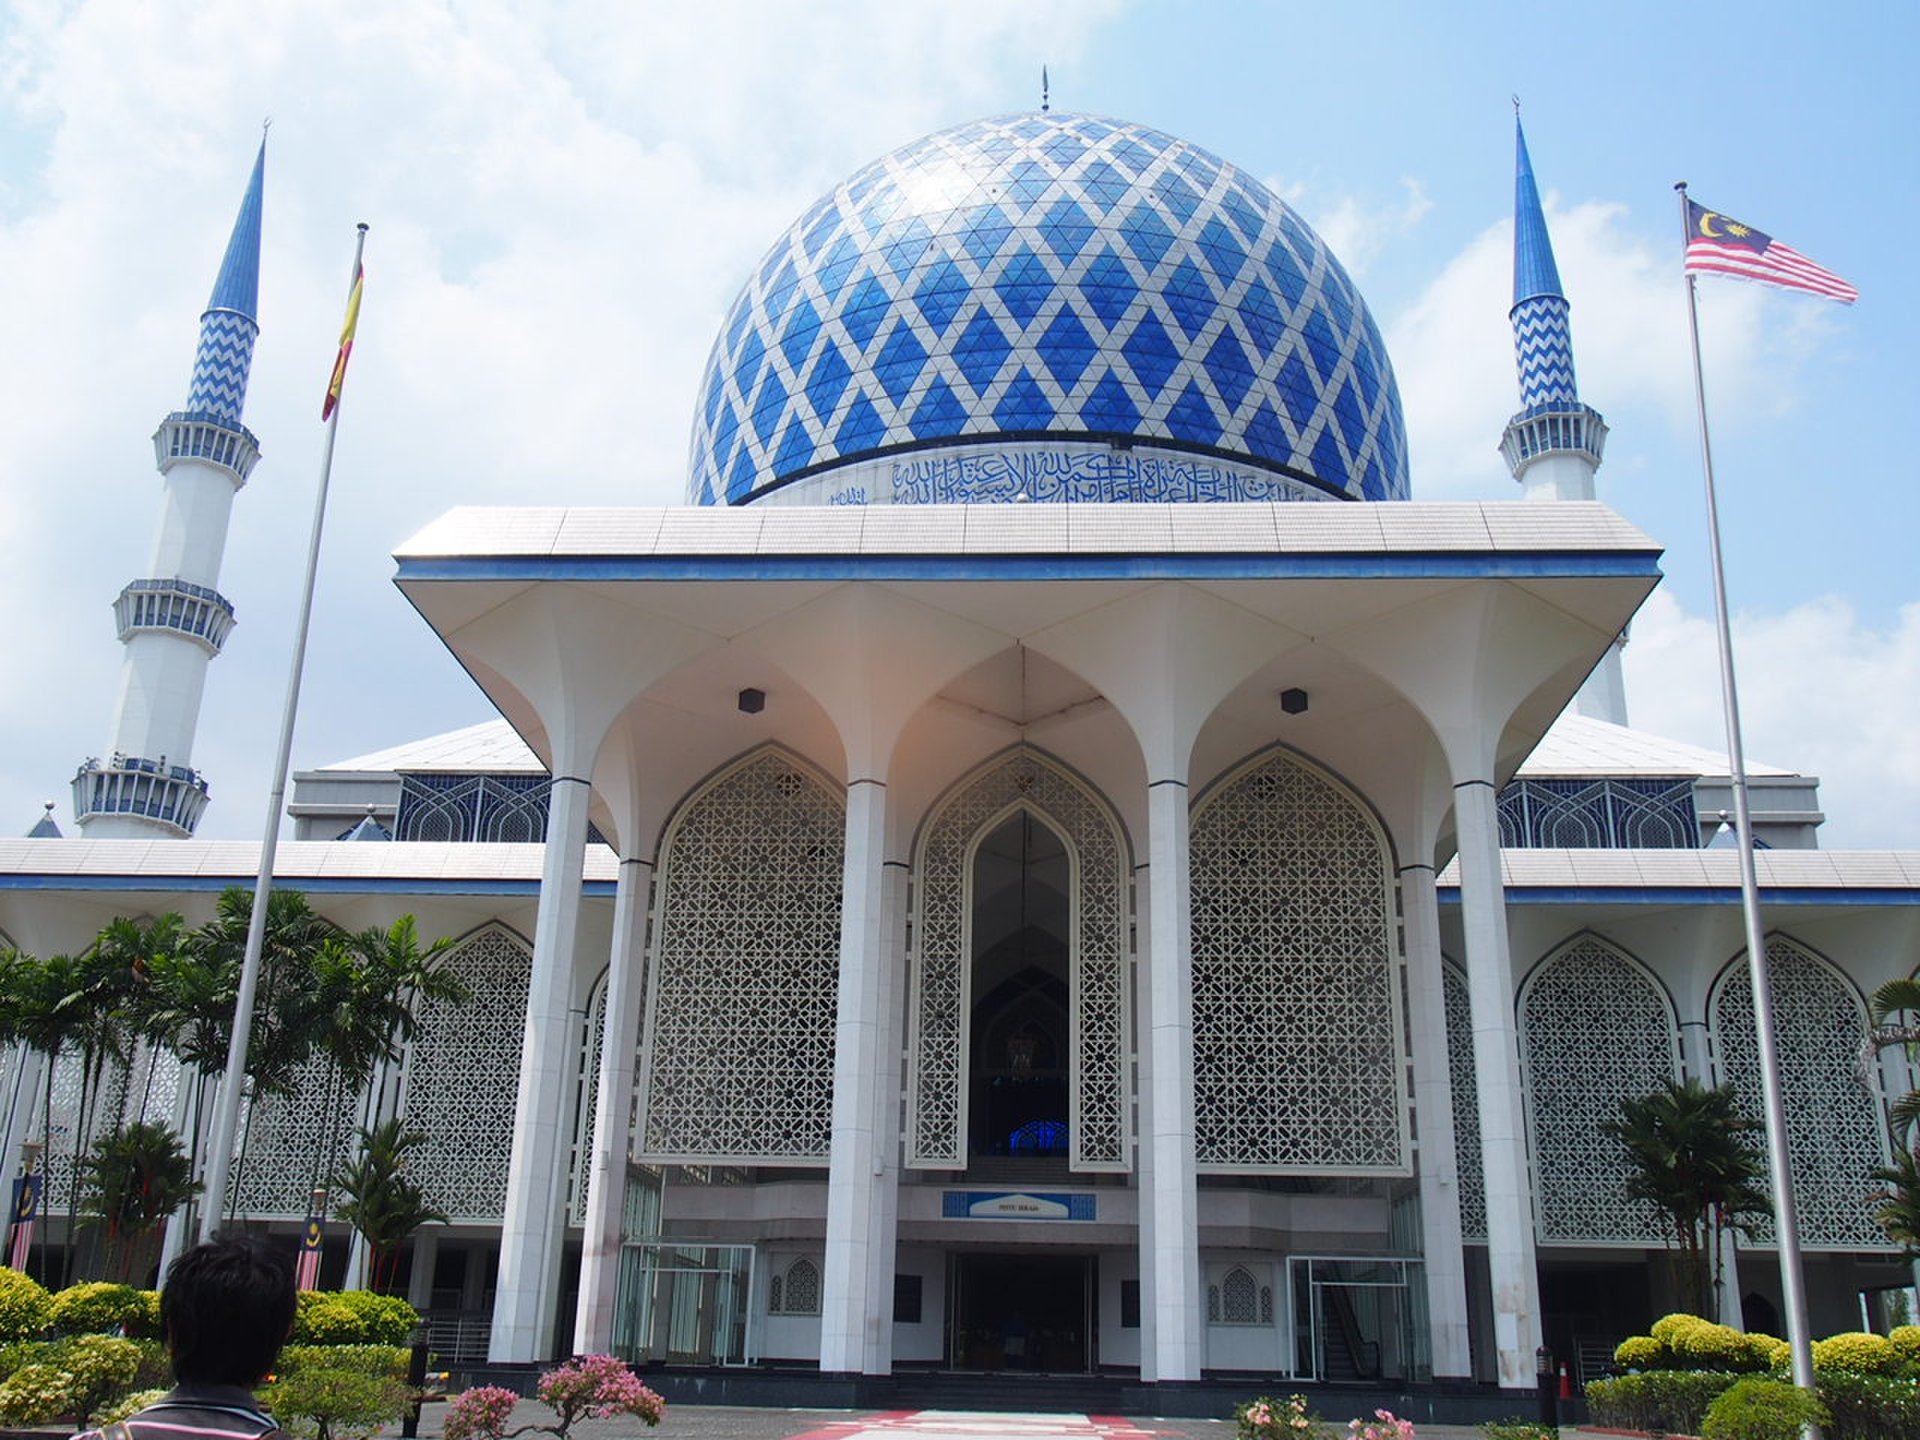 【海外旅行編☆マレーシア】クアラルンプール市内からブルー・モスクの歩き方☆